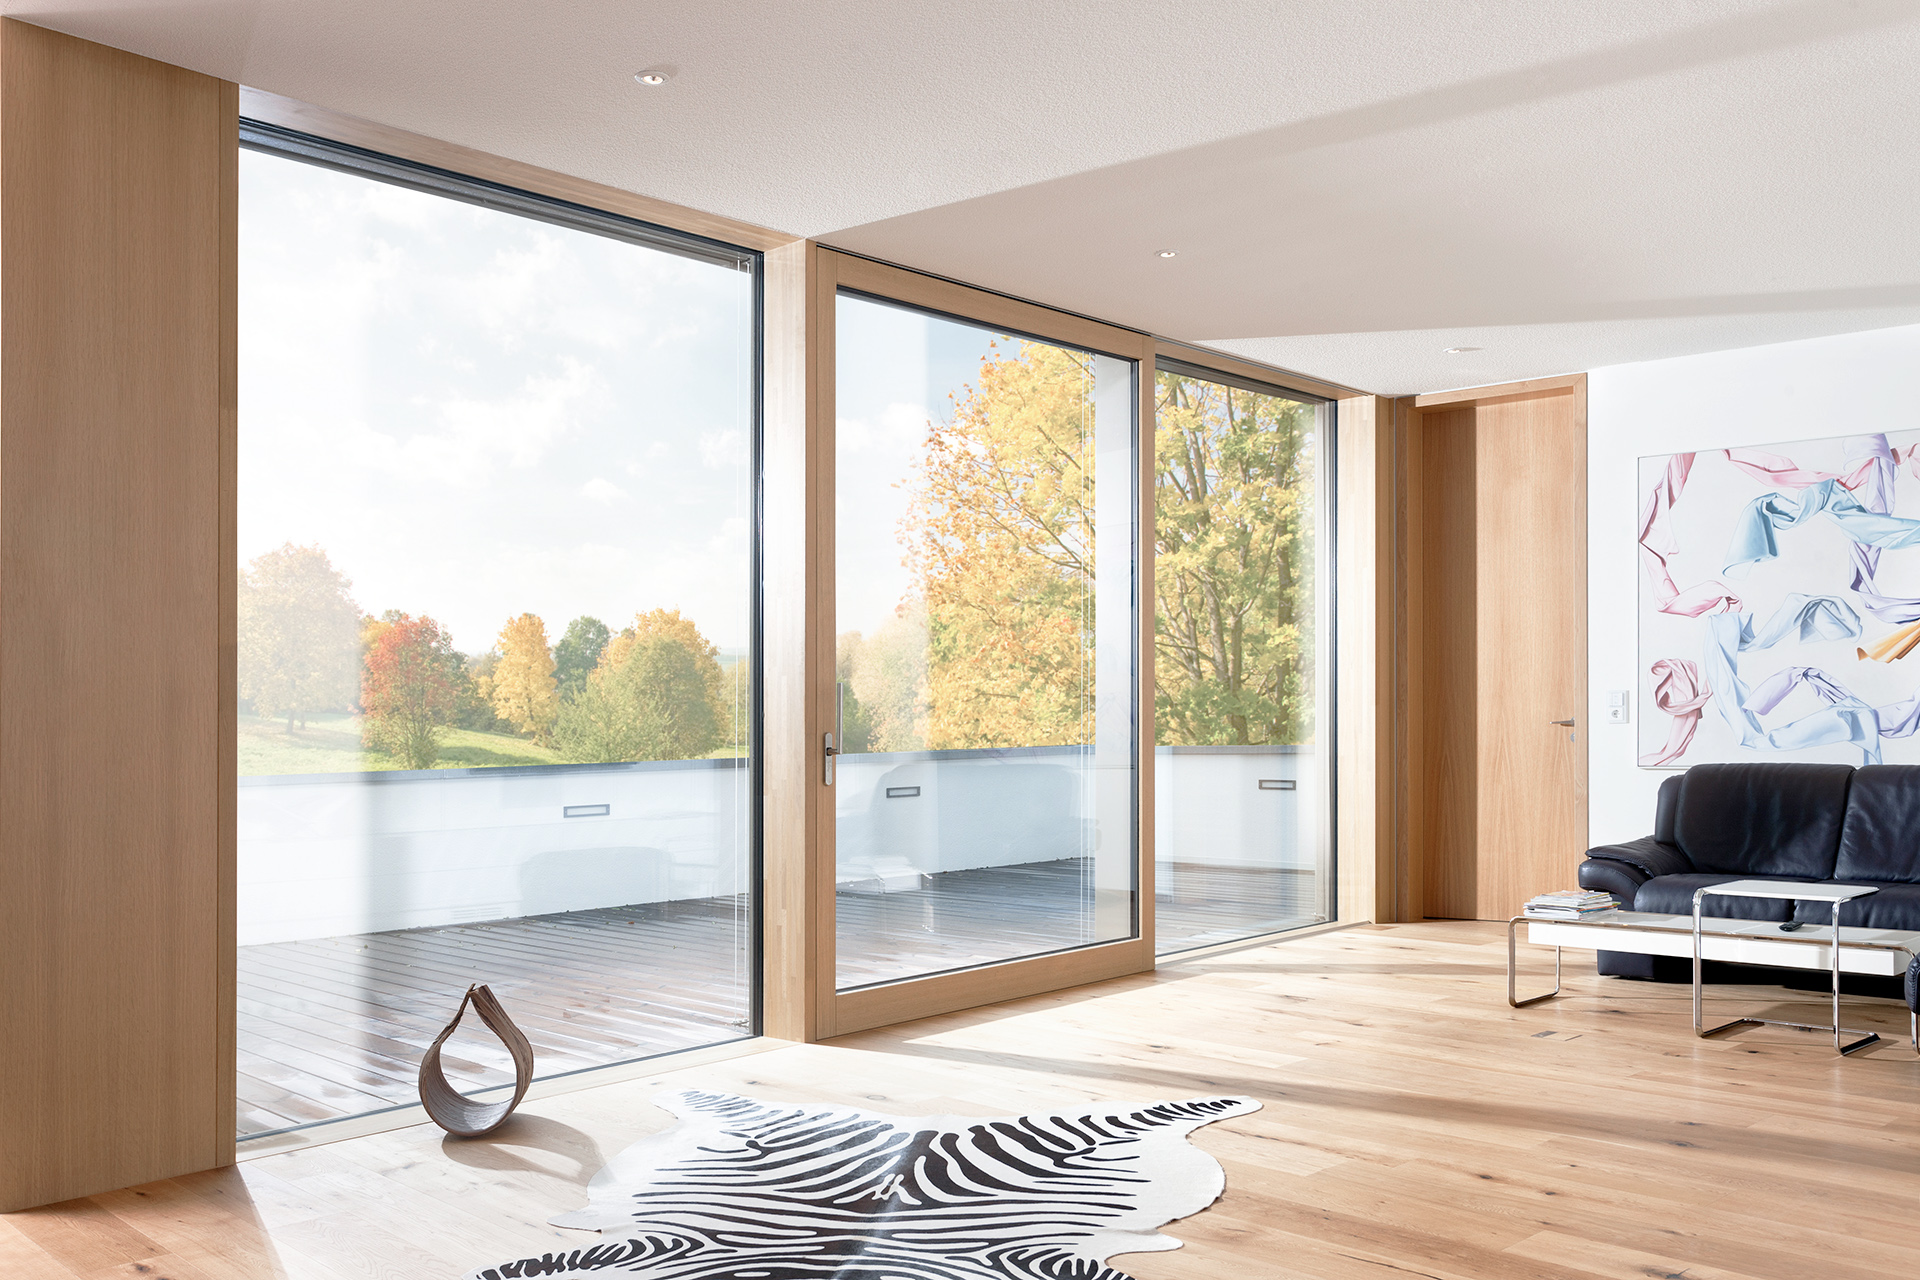 Moderner heller Wohnraum mit großer UNILUX Holz-Alu Hebe-Schiebe Anlage